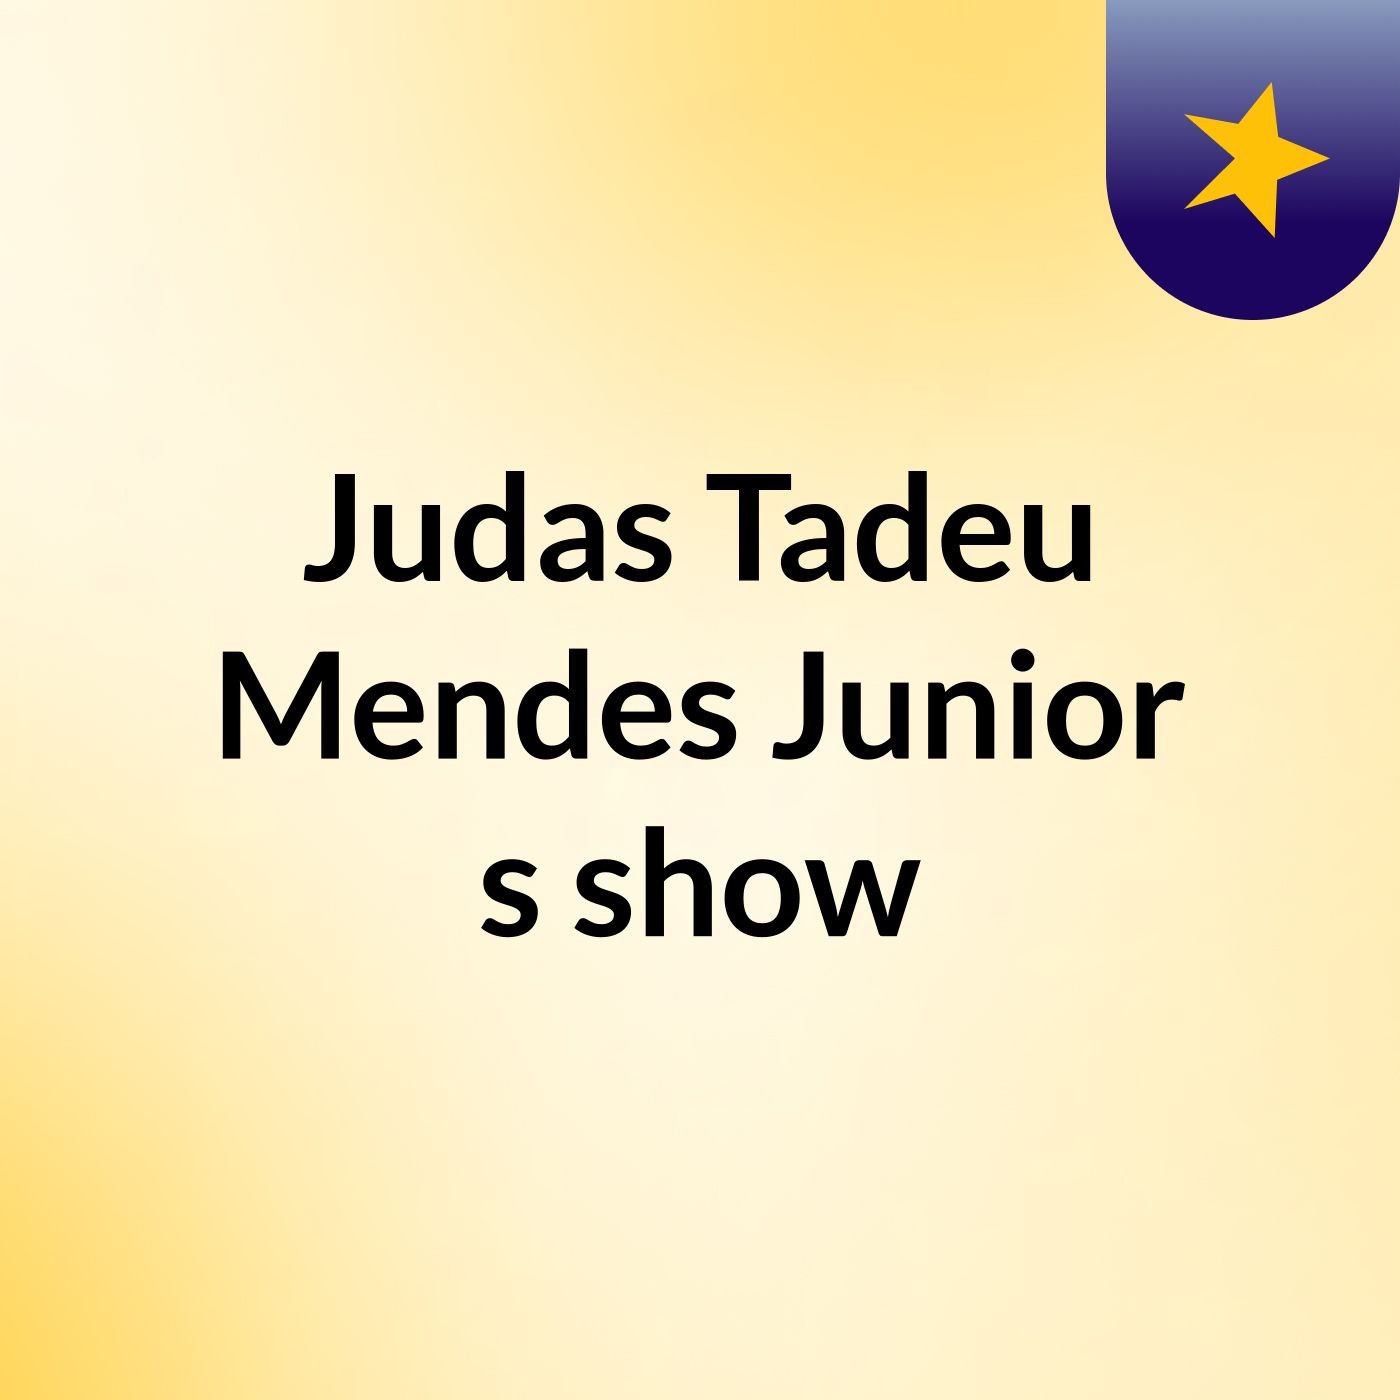 Judas Tadeu Mendes Junior's show